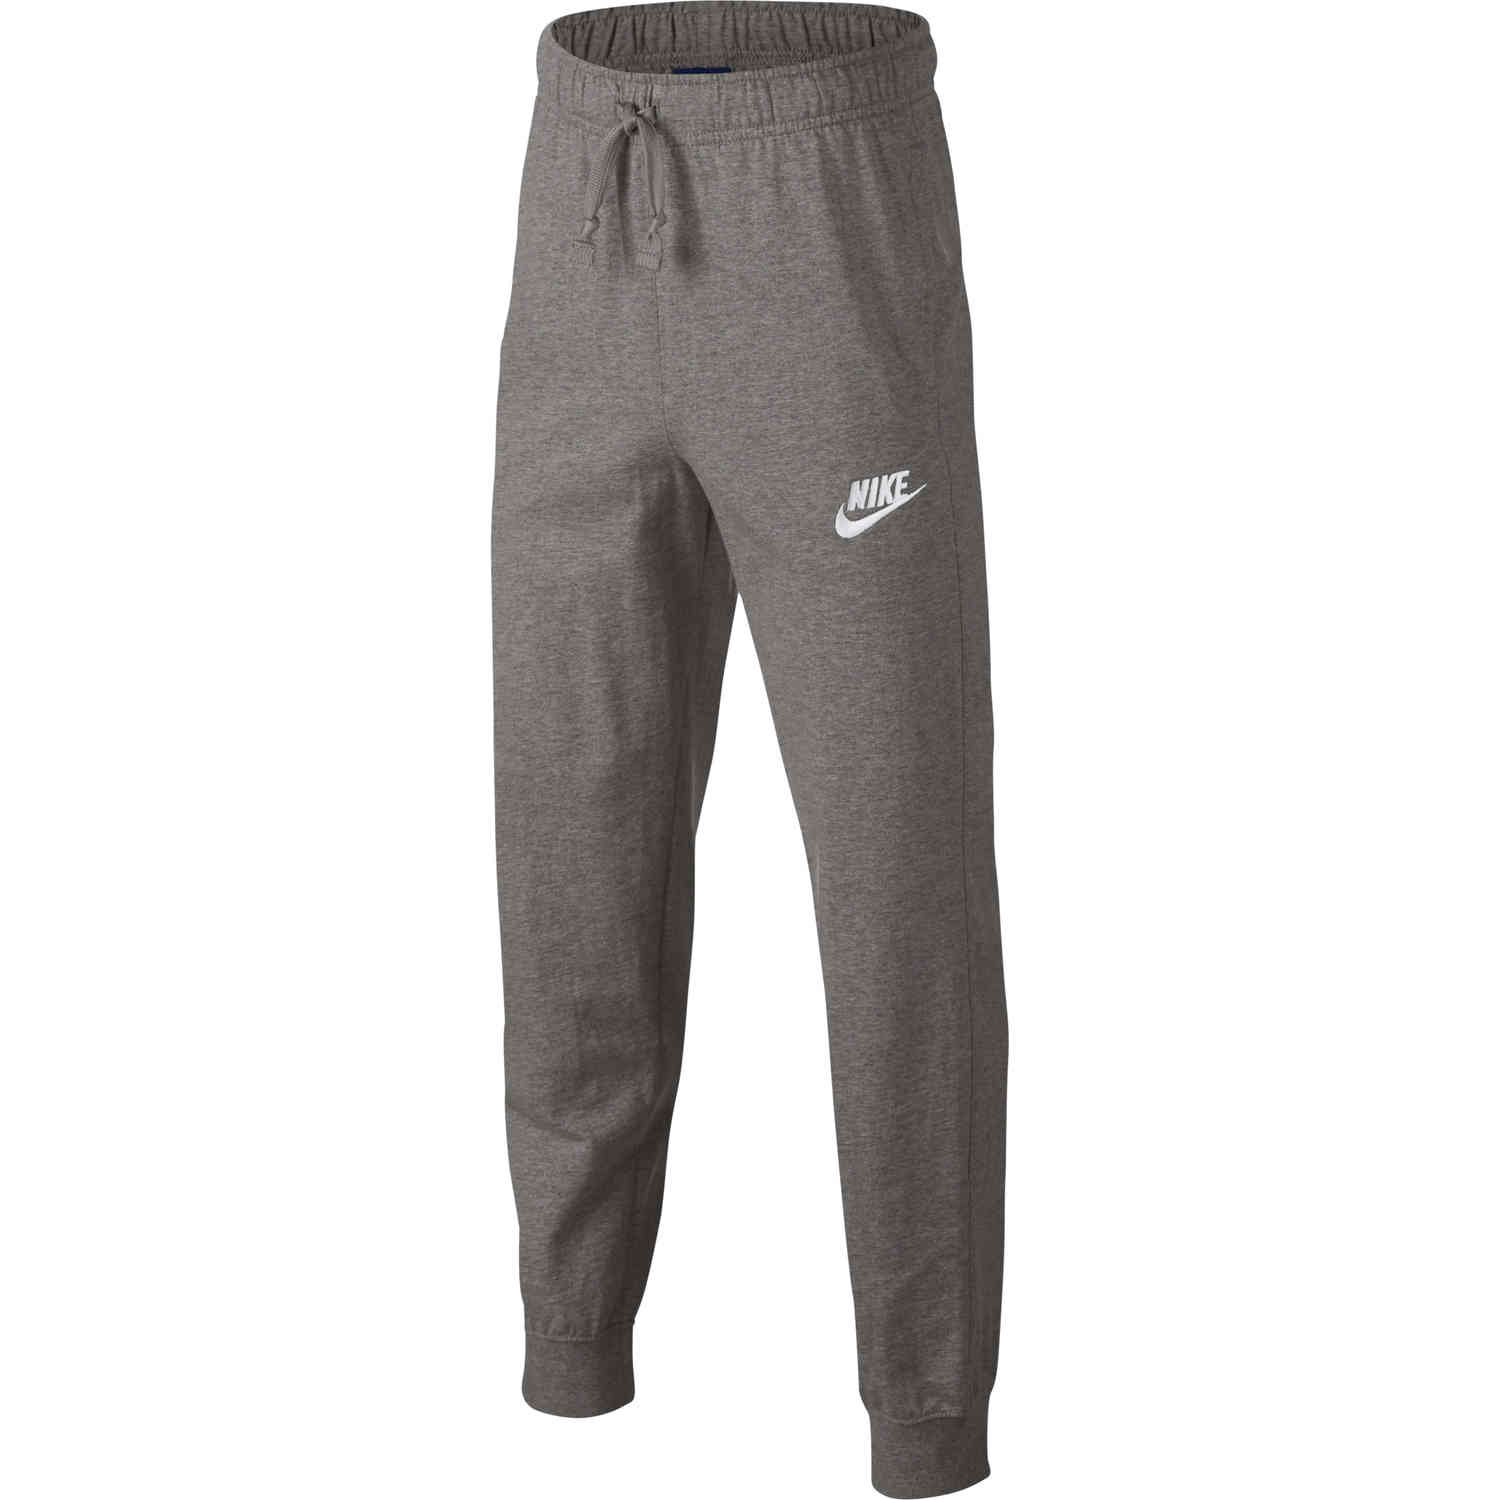 Kids Nike Sportswear Jersey Jogger Pants - Dark Grey Heather - Soccer ...